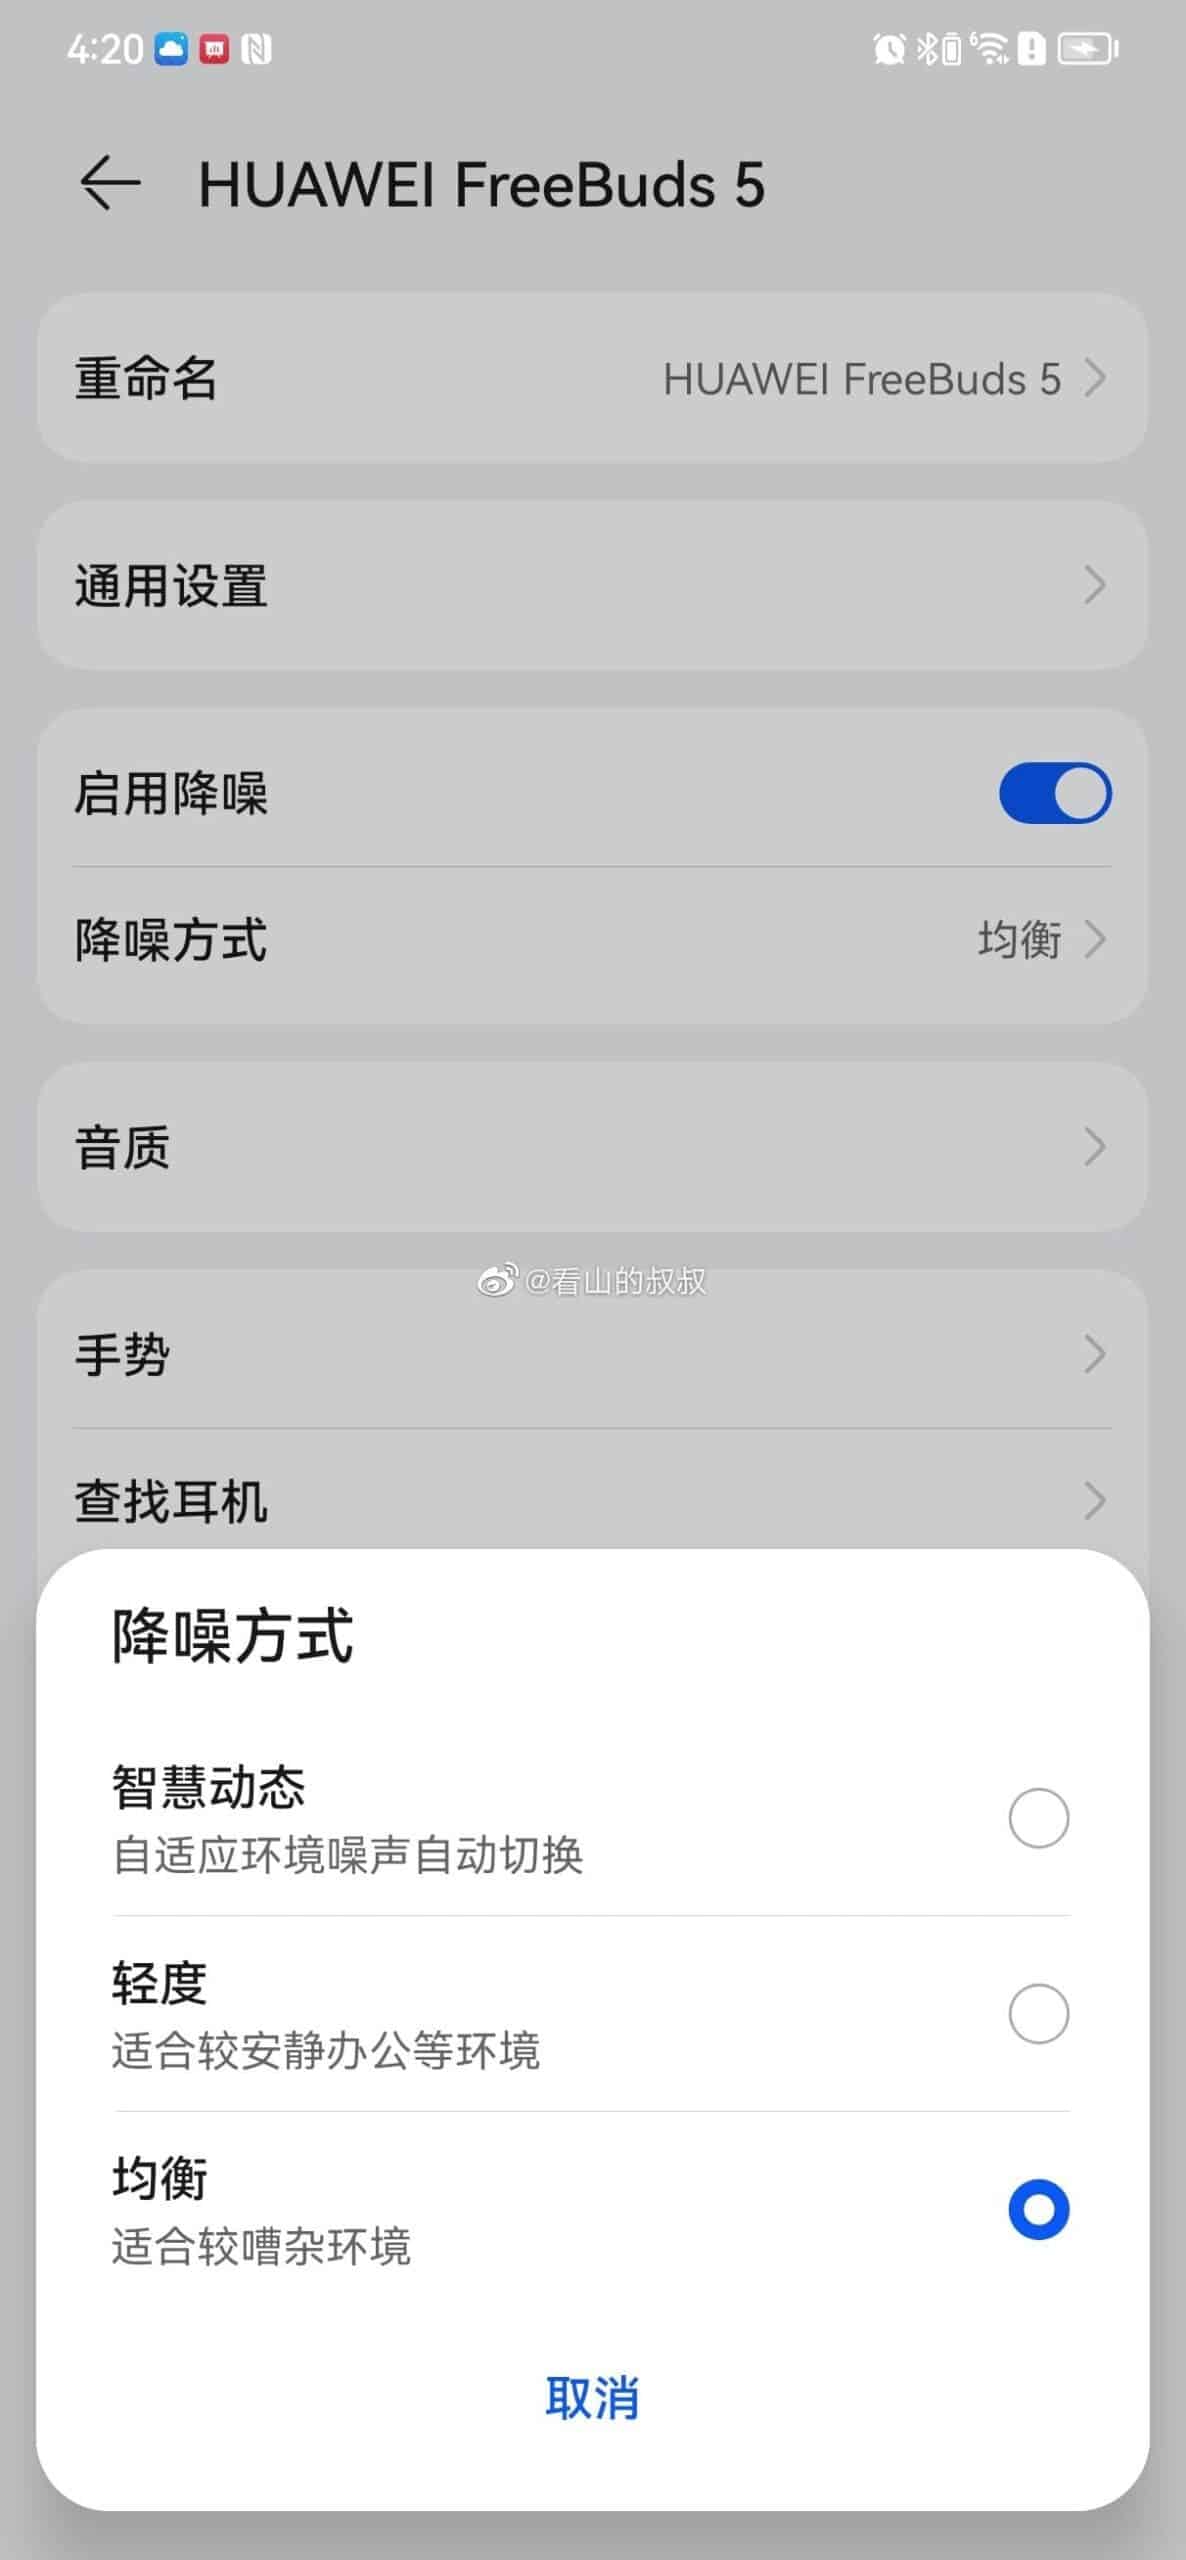 Особенности Huawei FreeBuds 5